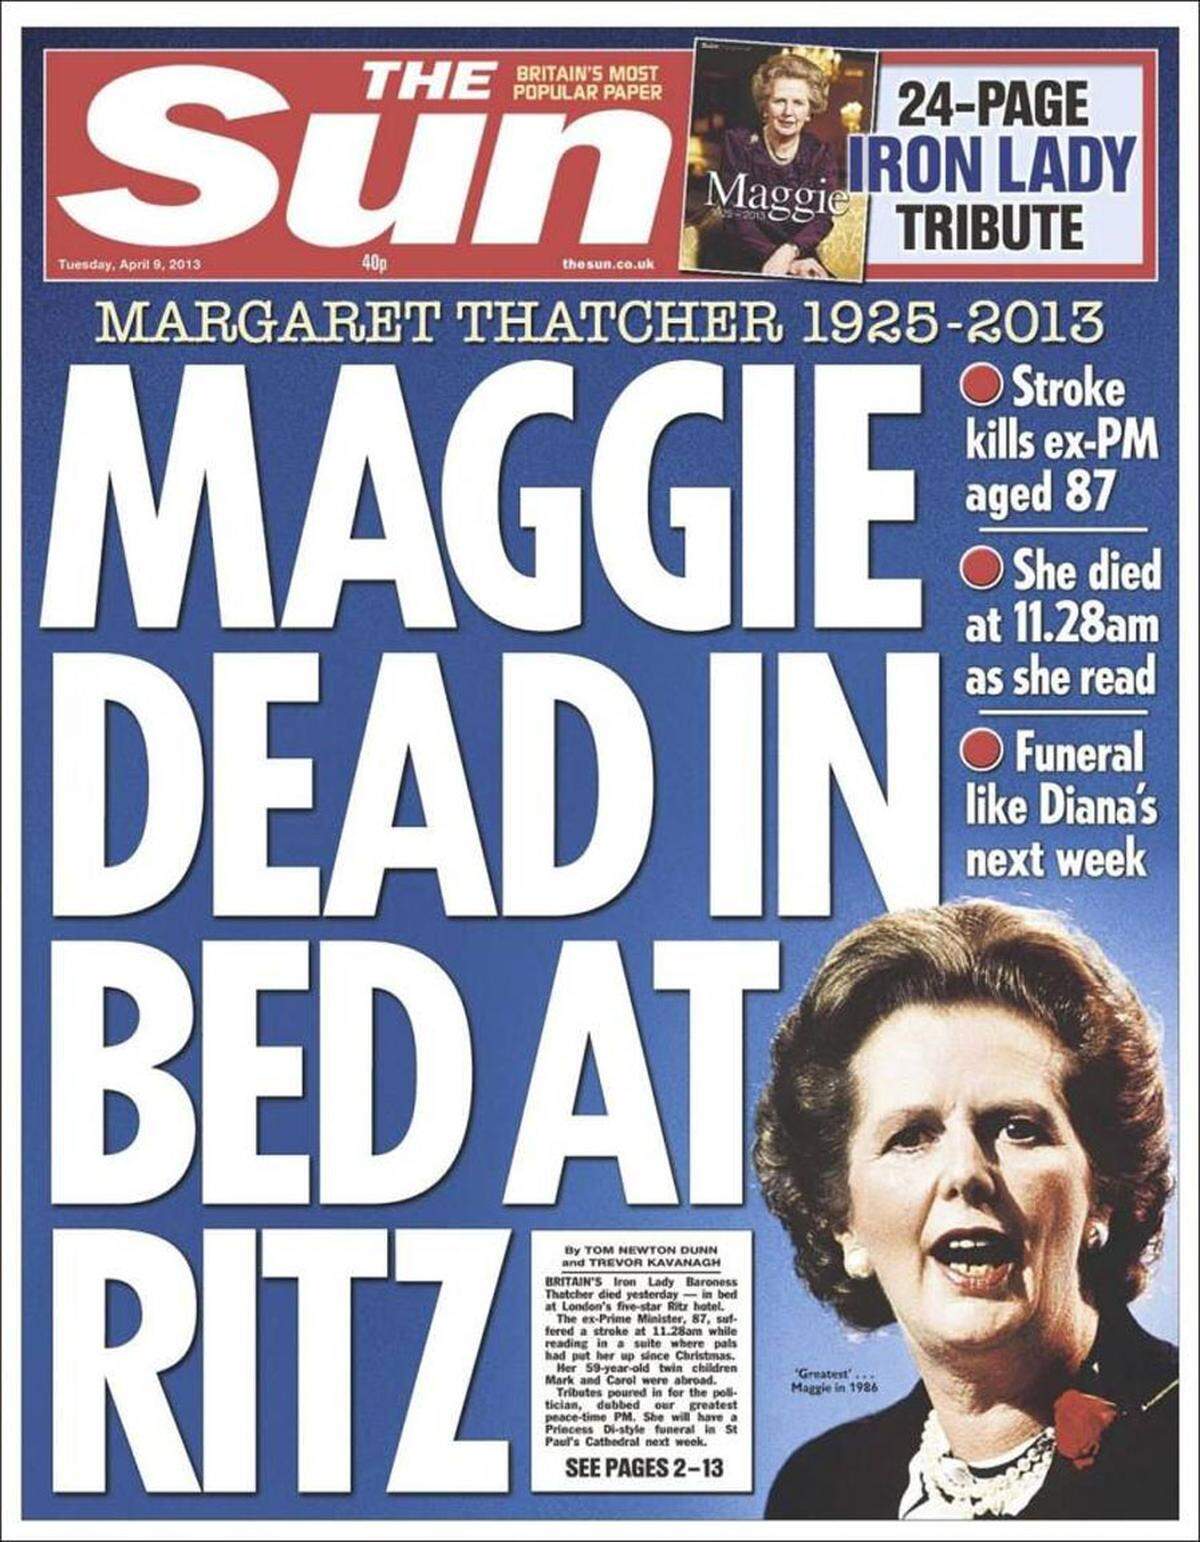 Margaret Thatcher ist tot - sie erlag im Alter von 87 Jahren einem Schlaganfall. Ihr Tod sorgte für Zeitungs-Aufmacher in Großbritannien und ganz Europa. Ein kleiner Überblick.